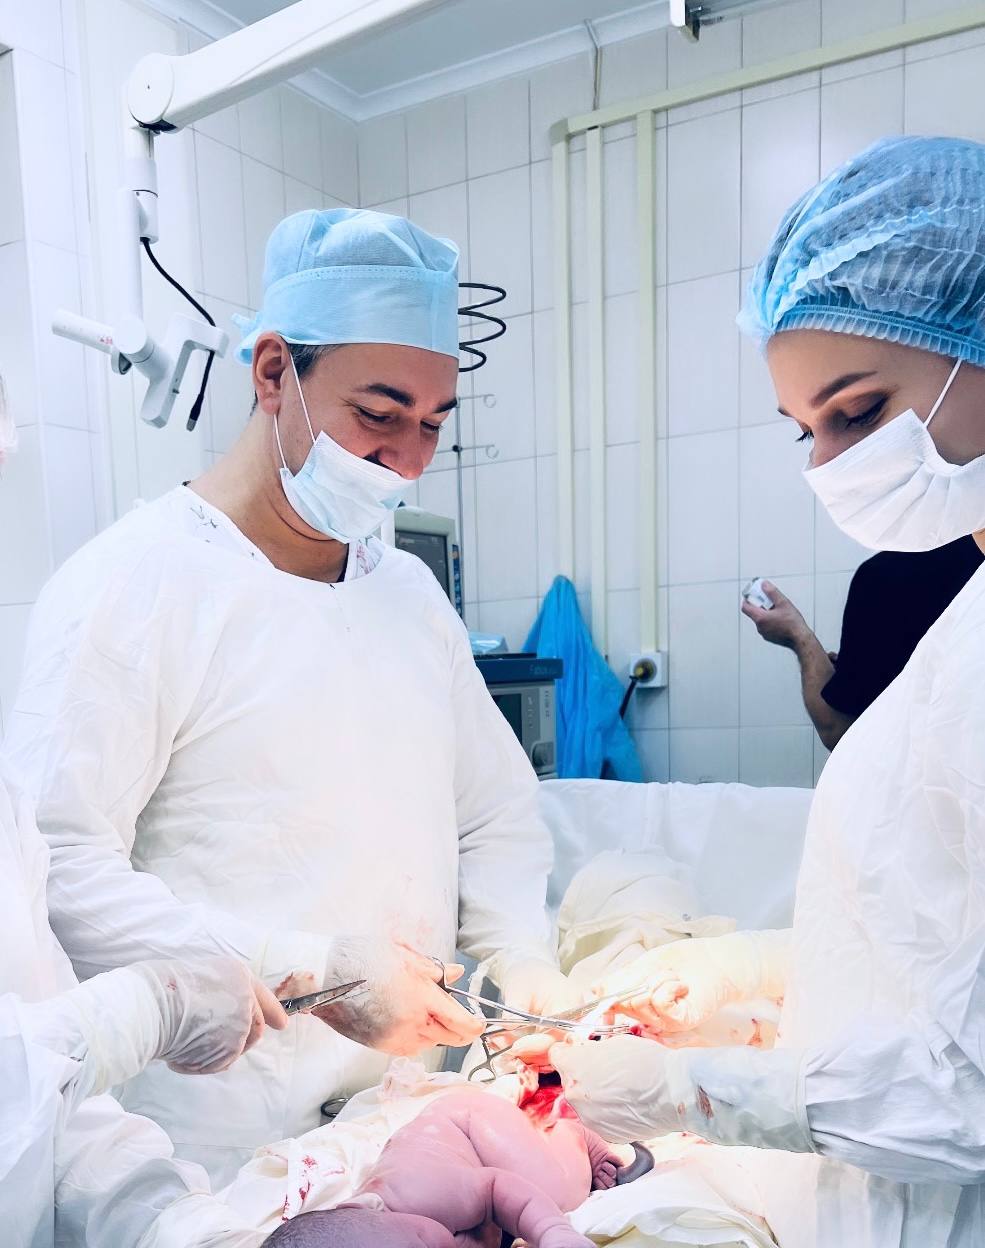 Хирурги НИИАП Ростова-на-Дону удалили 40 опухолей на матке пациентки во время кесарева сечения 2